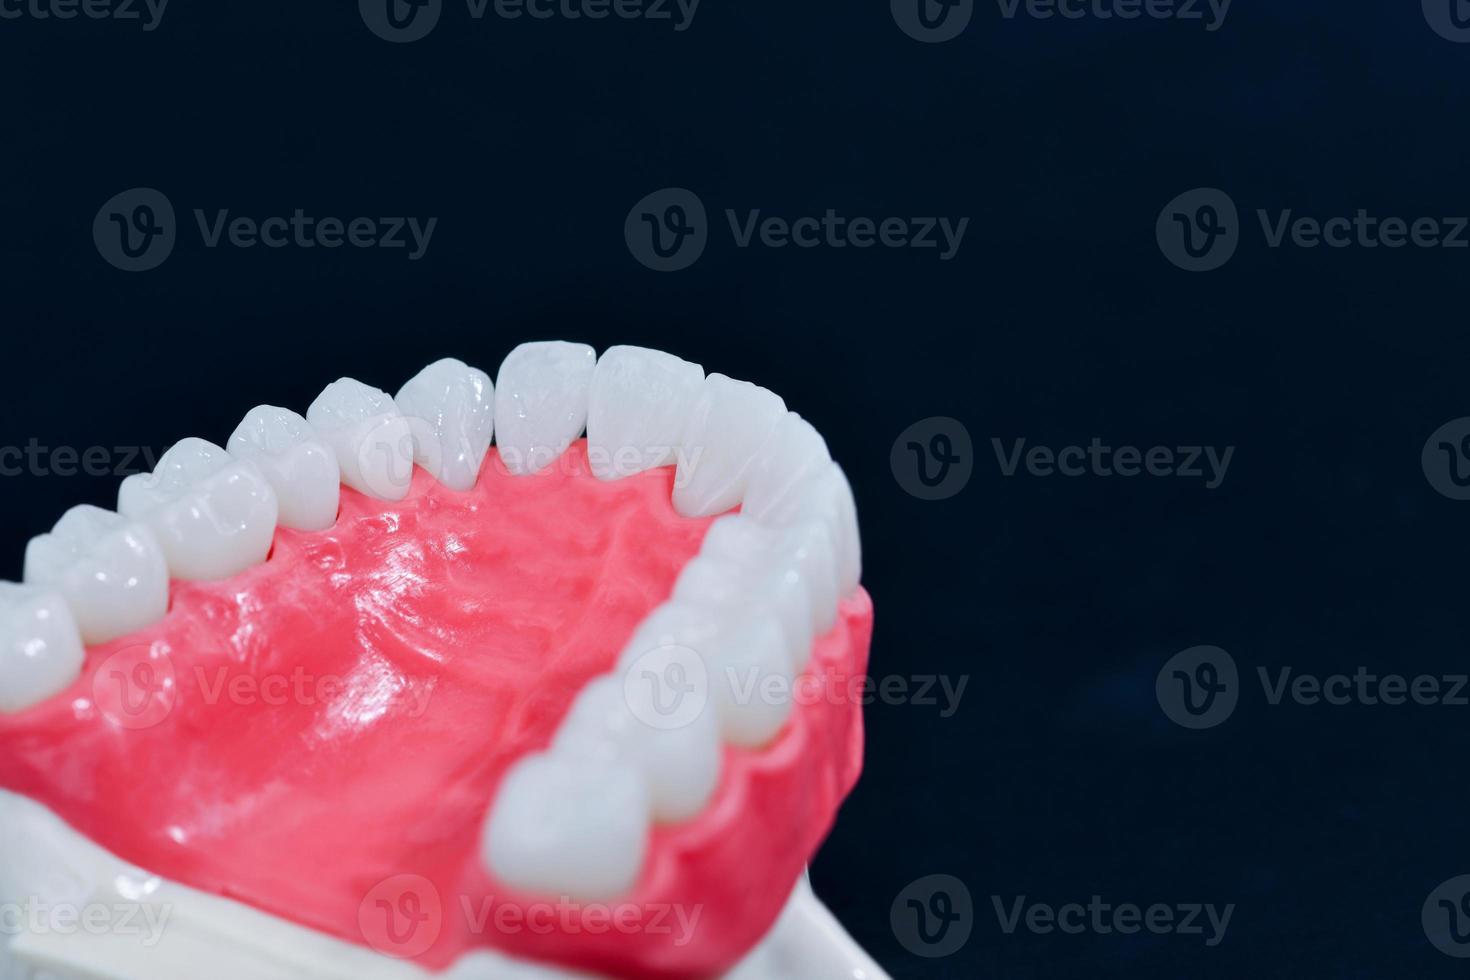 menschlicher Oberkiefer mit Zähnen und Zahnfleisch Anatomiemodell foto